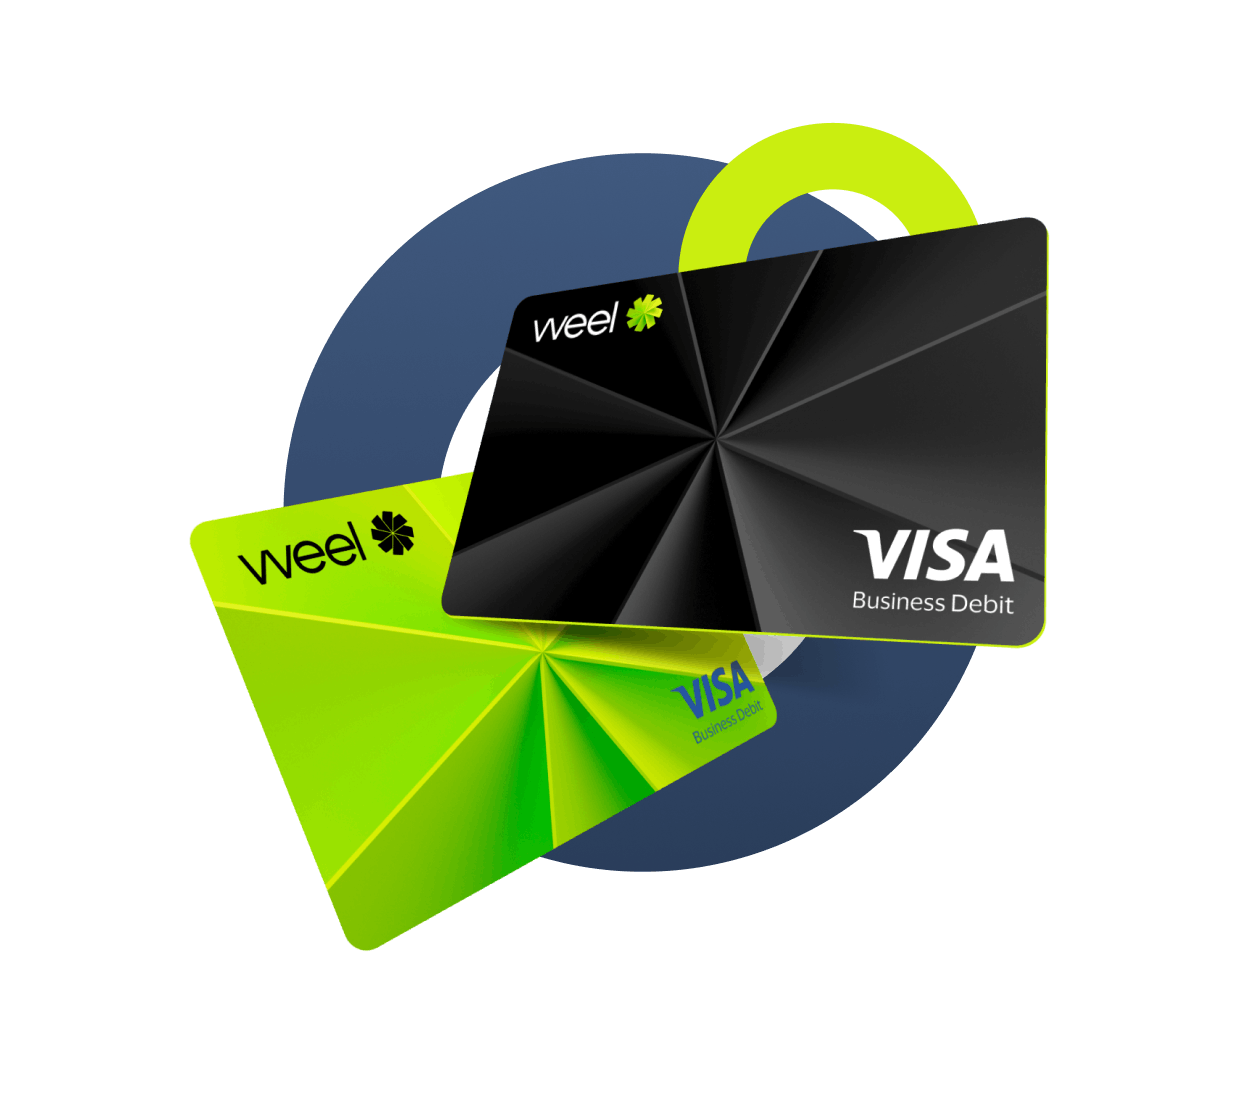 Weel's Visa Business Debit Cards